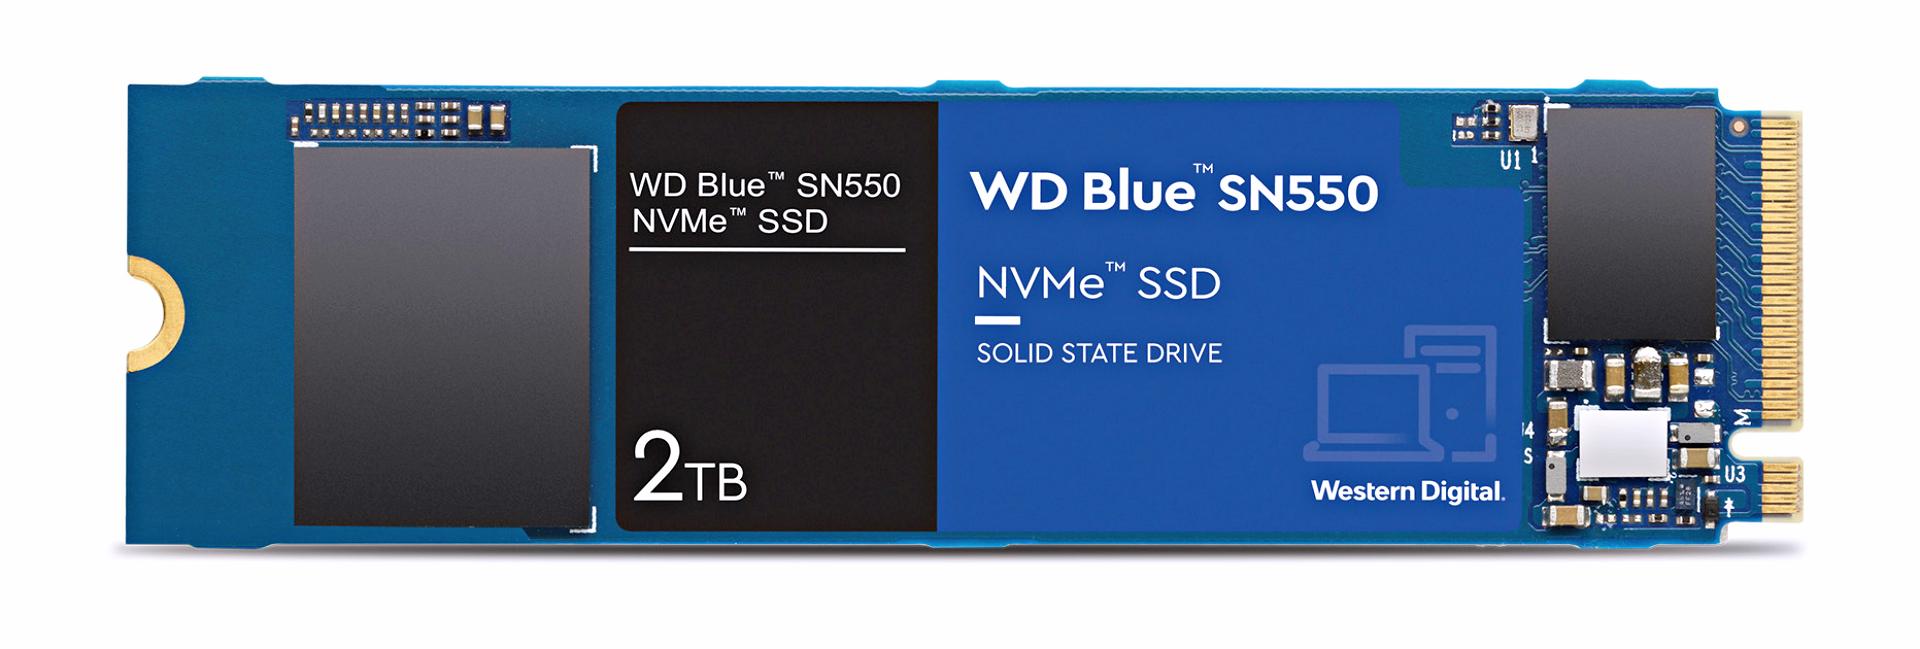 [웨스턴디지털_이미지] WD 블루 SN550 NVMe SSD 2TB.jpg